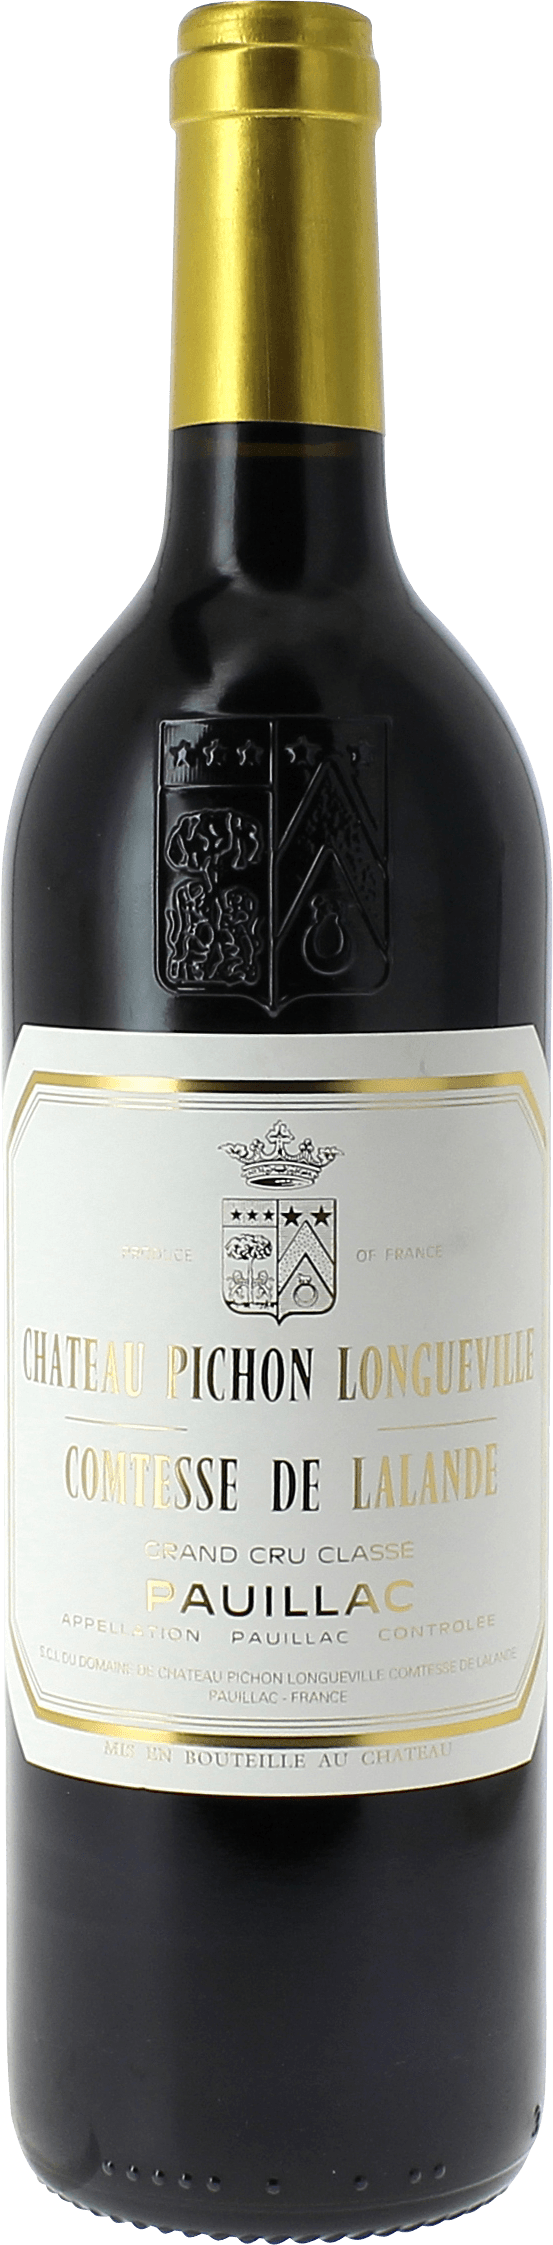 Pichon comtesse de lalande 2003 2me Grand cru class Pauillac, Bordeaux rouge